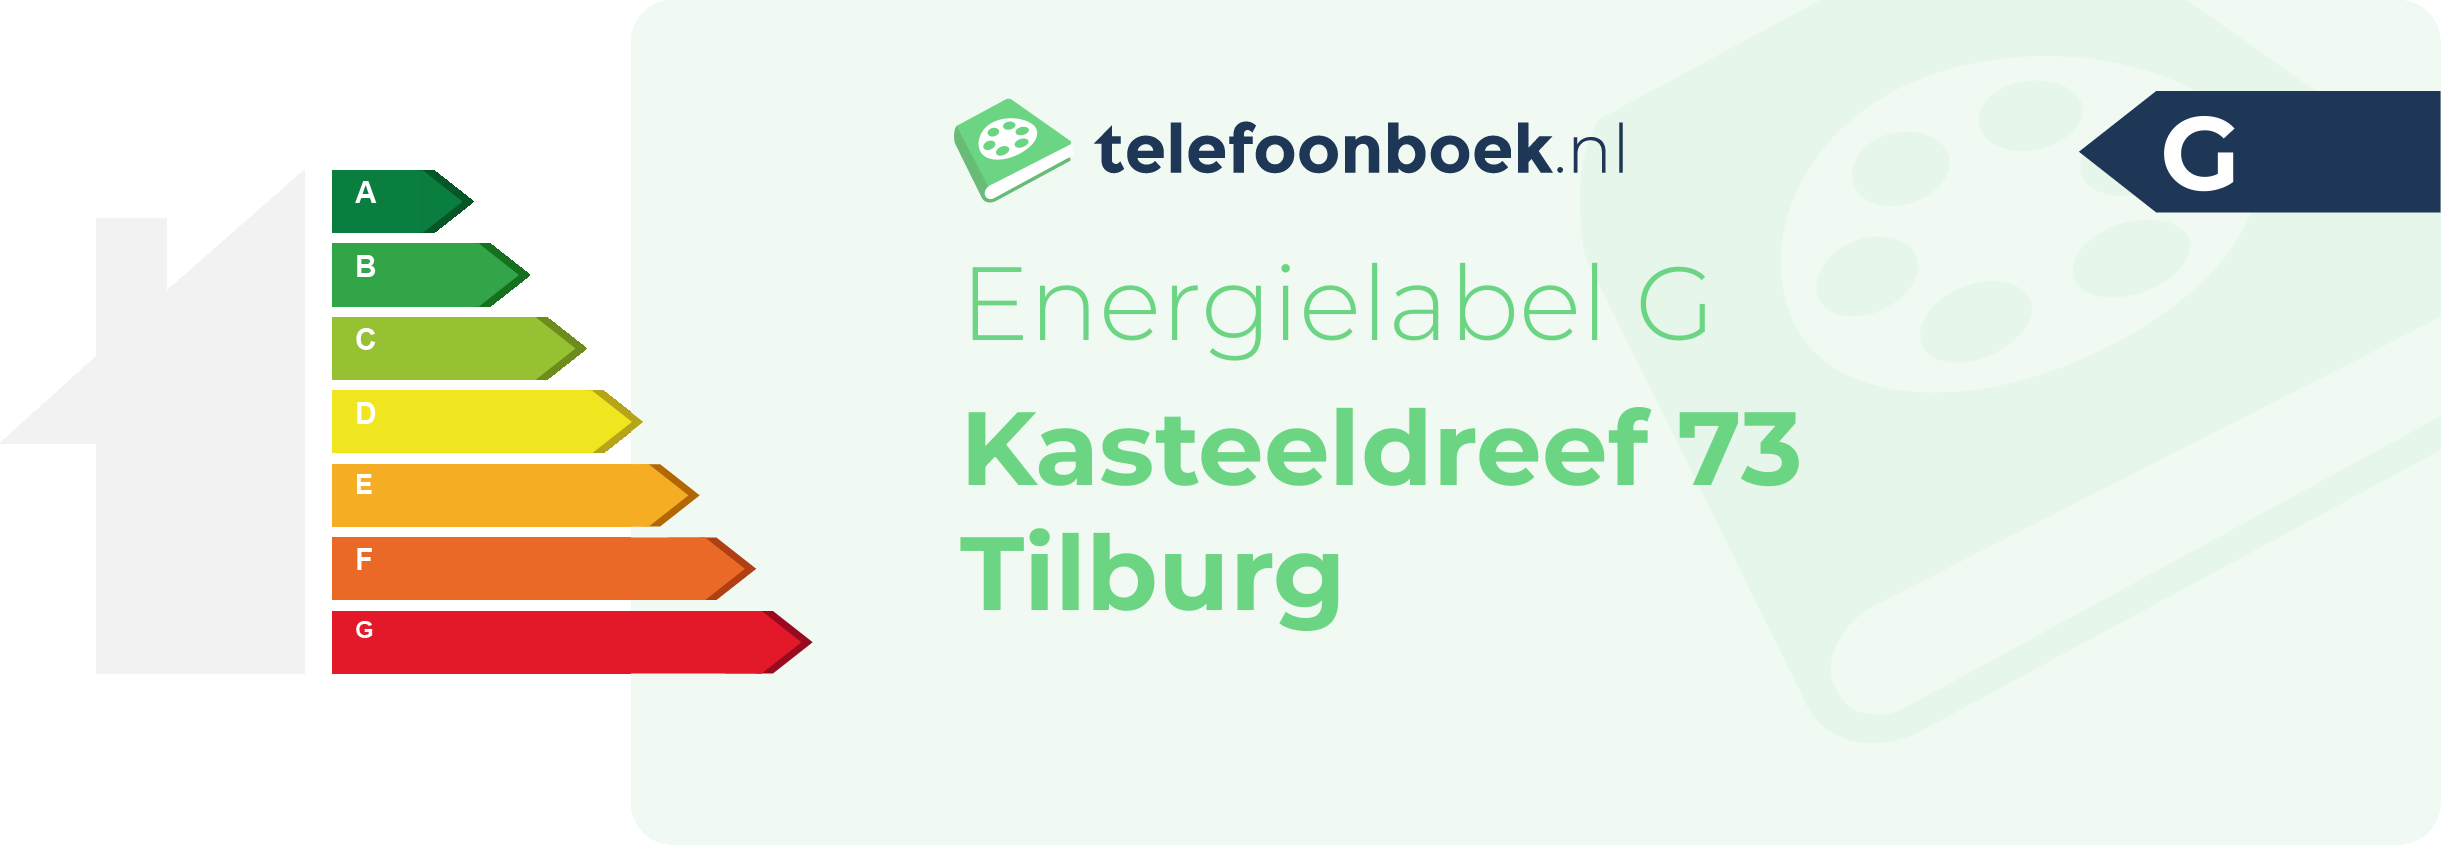 Energielabel Kasteeldreef 73 Tilburg